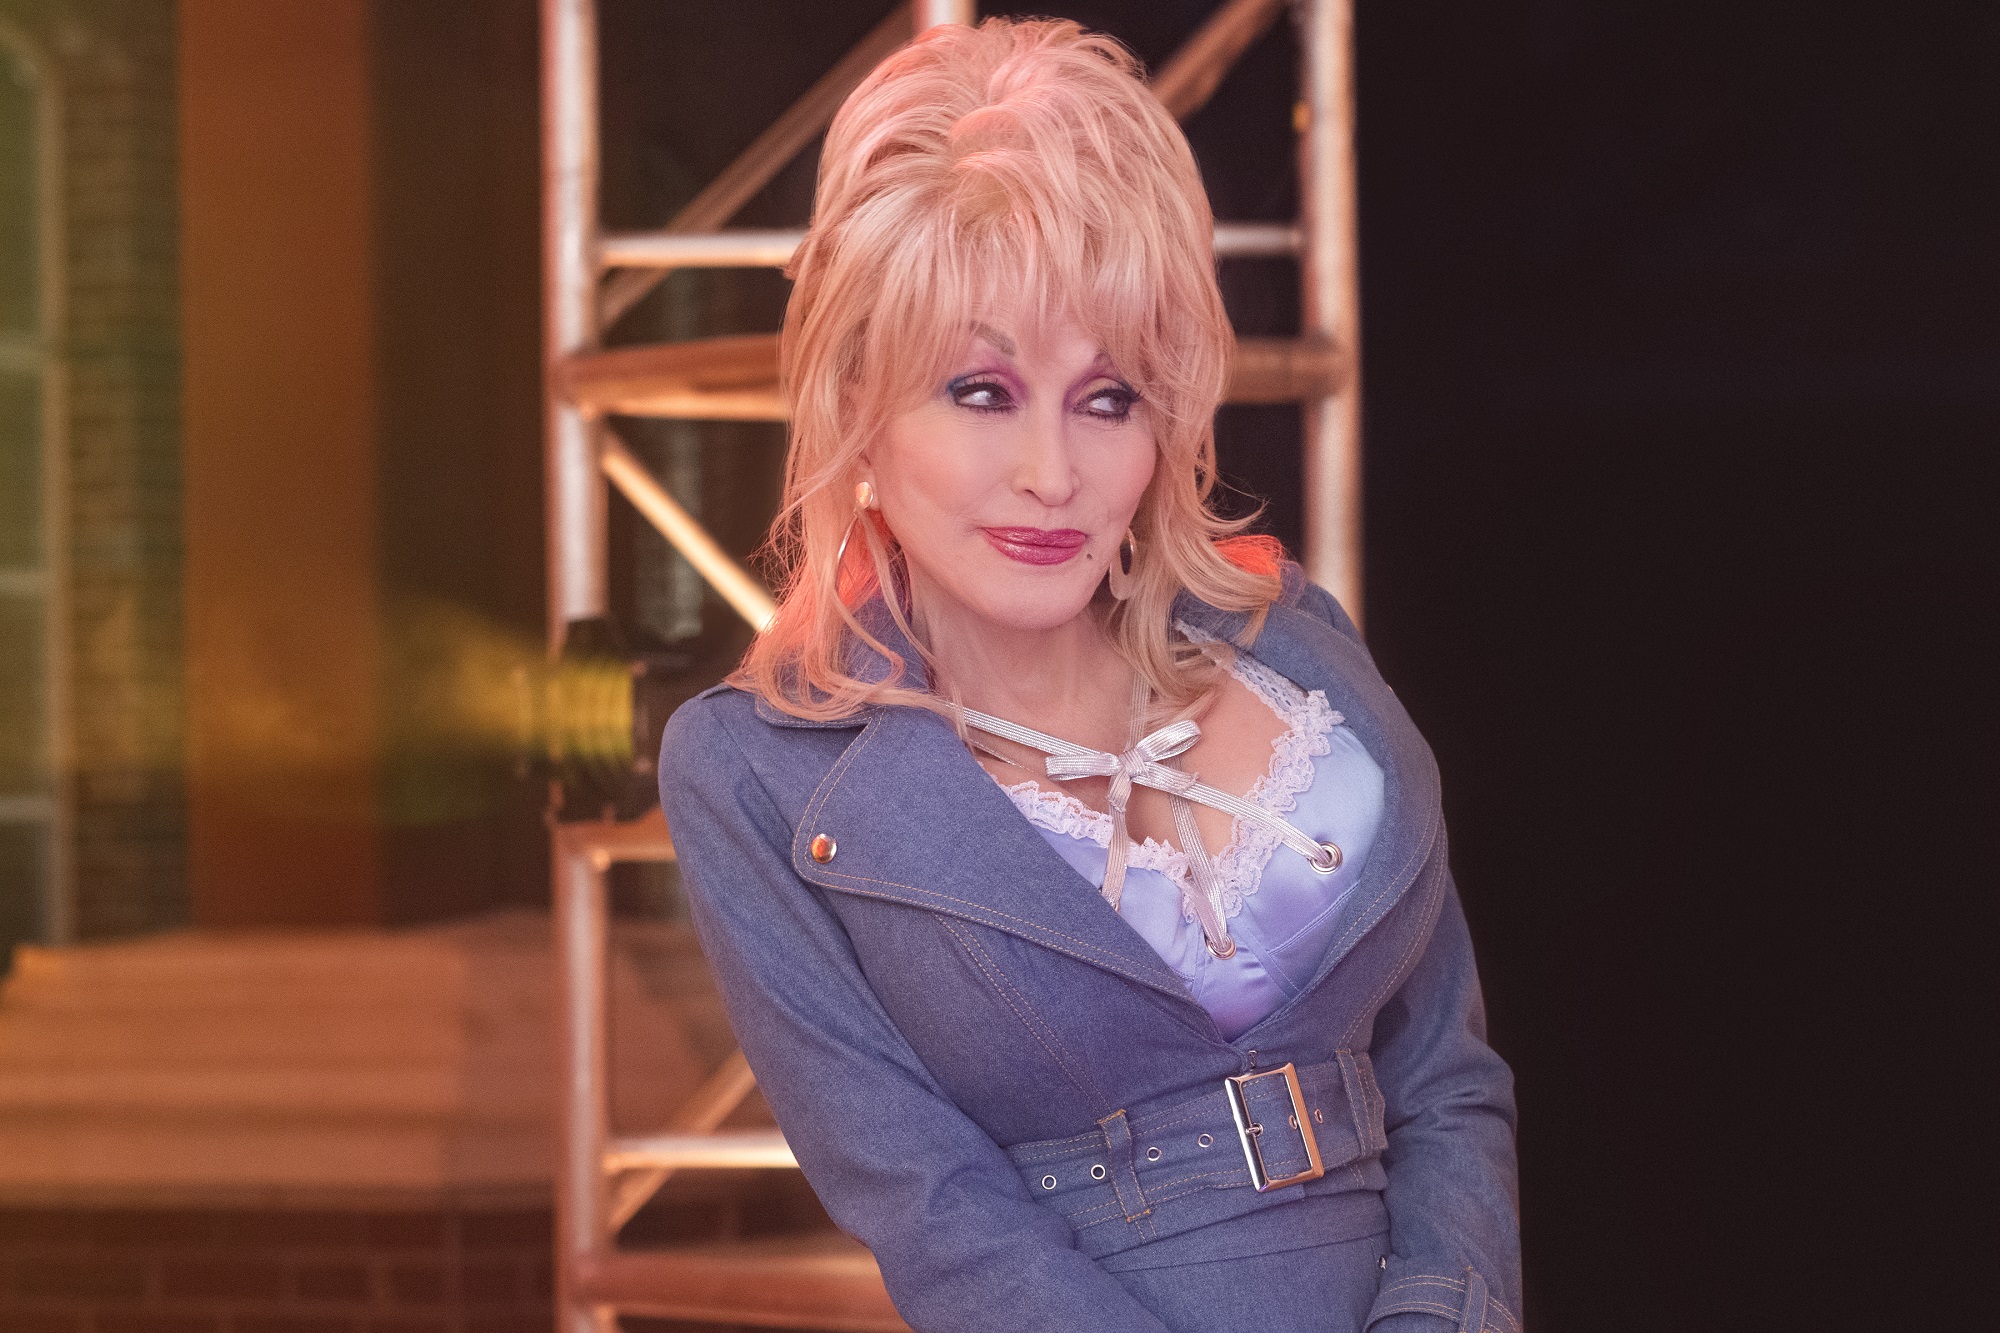 Jolene singer Dolly Parton